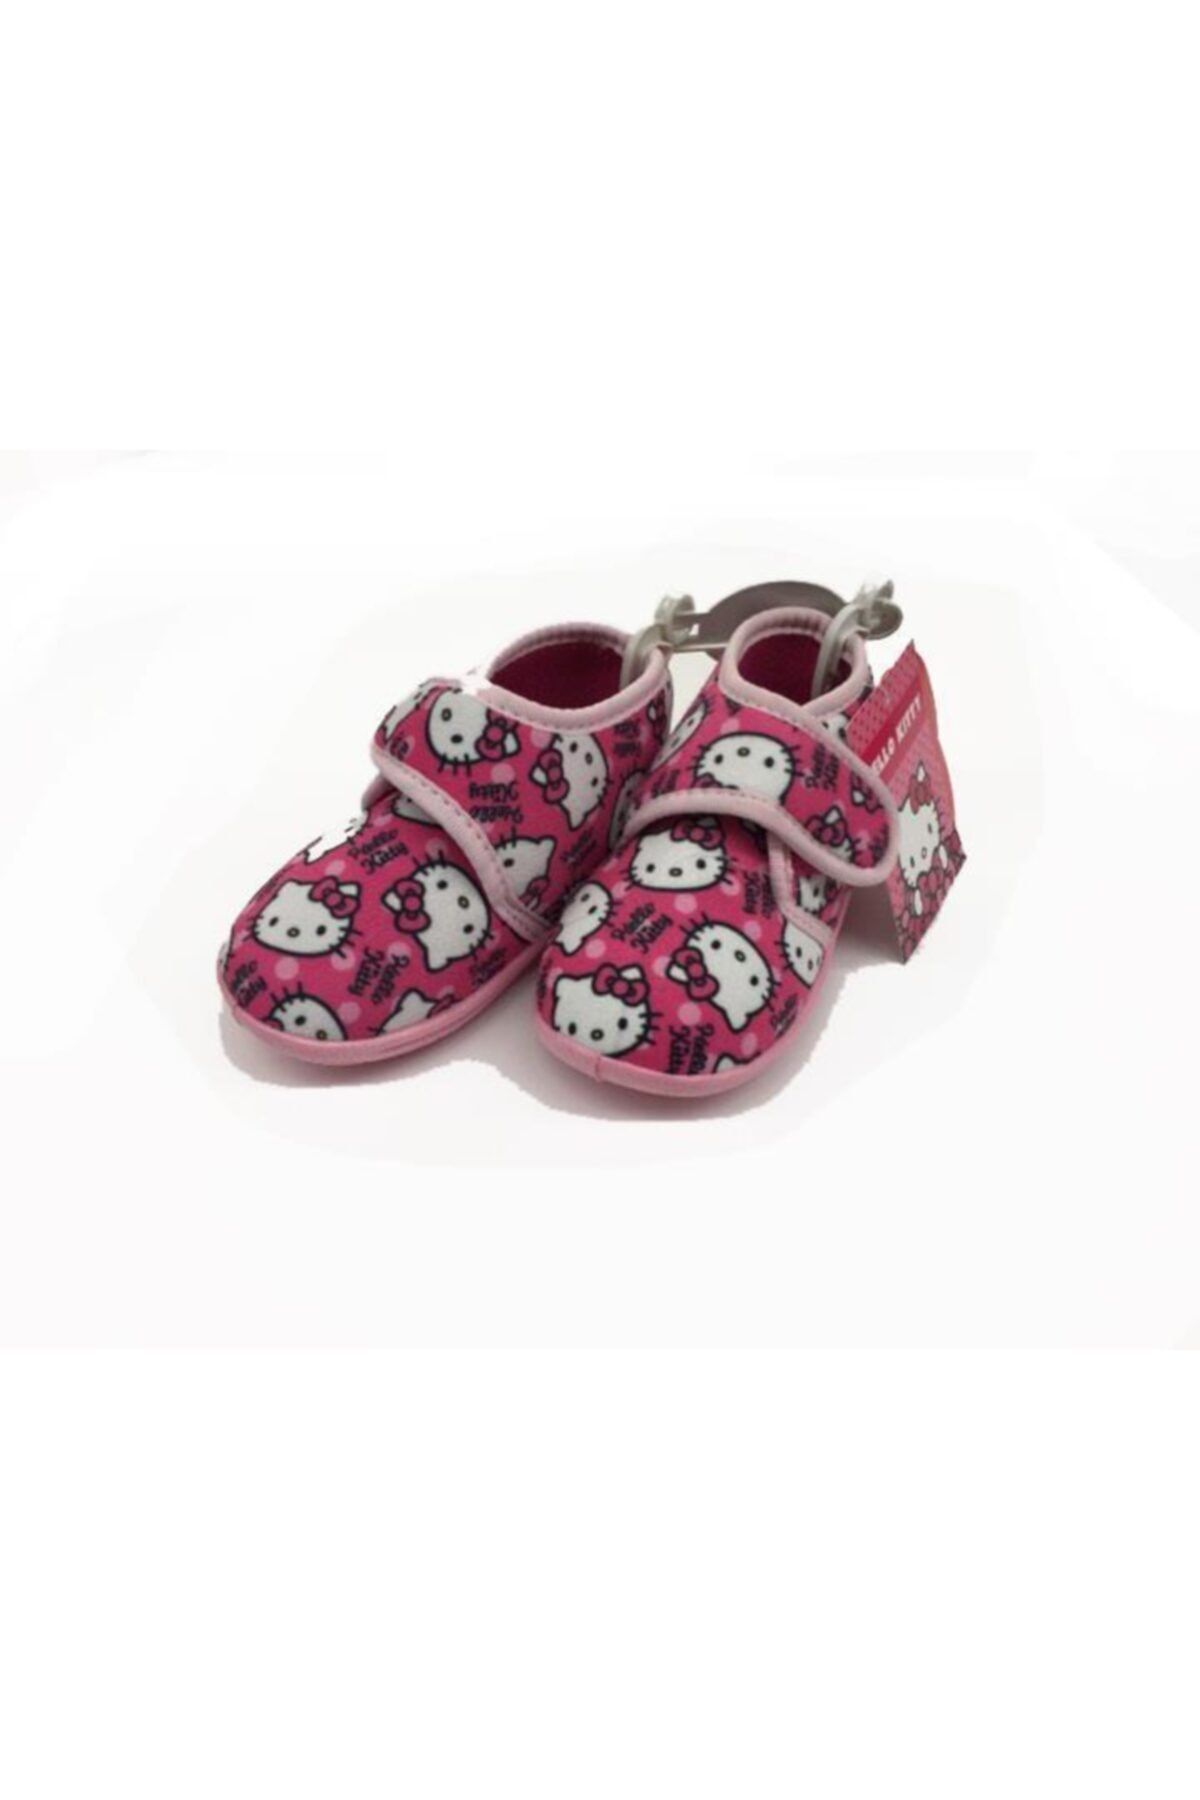 Hakan Çanta Hello Kitty Lisanslı Panduf Çocuk Ayakkabısı 22 Numara